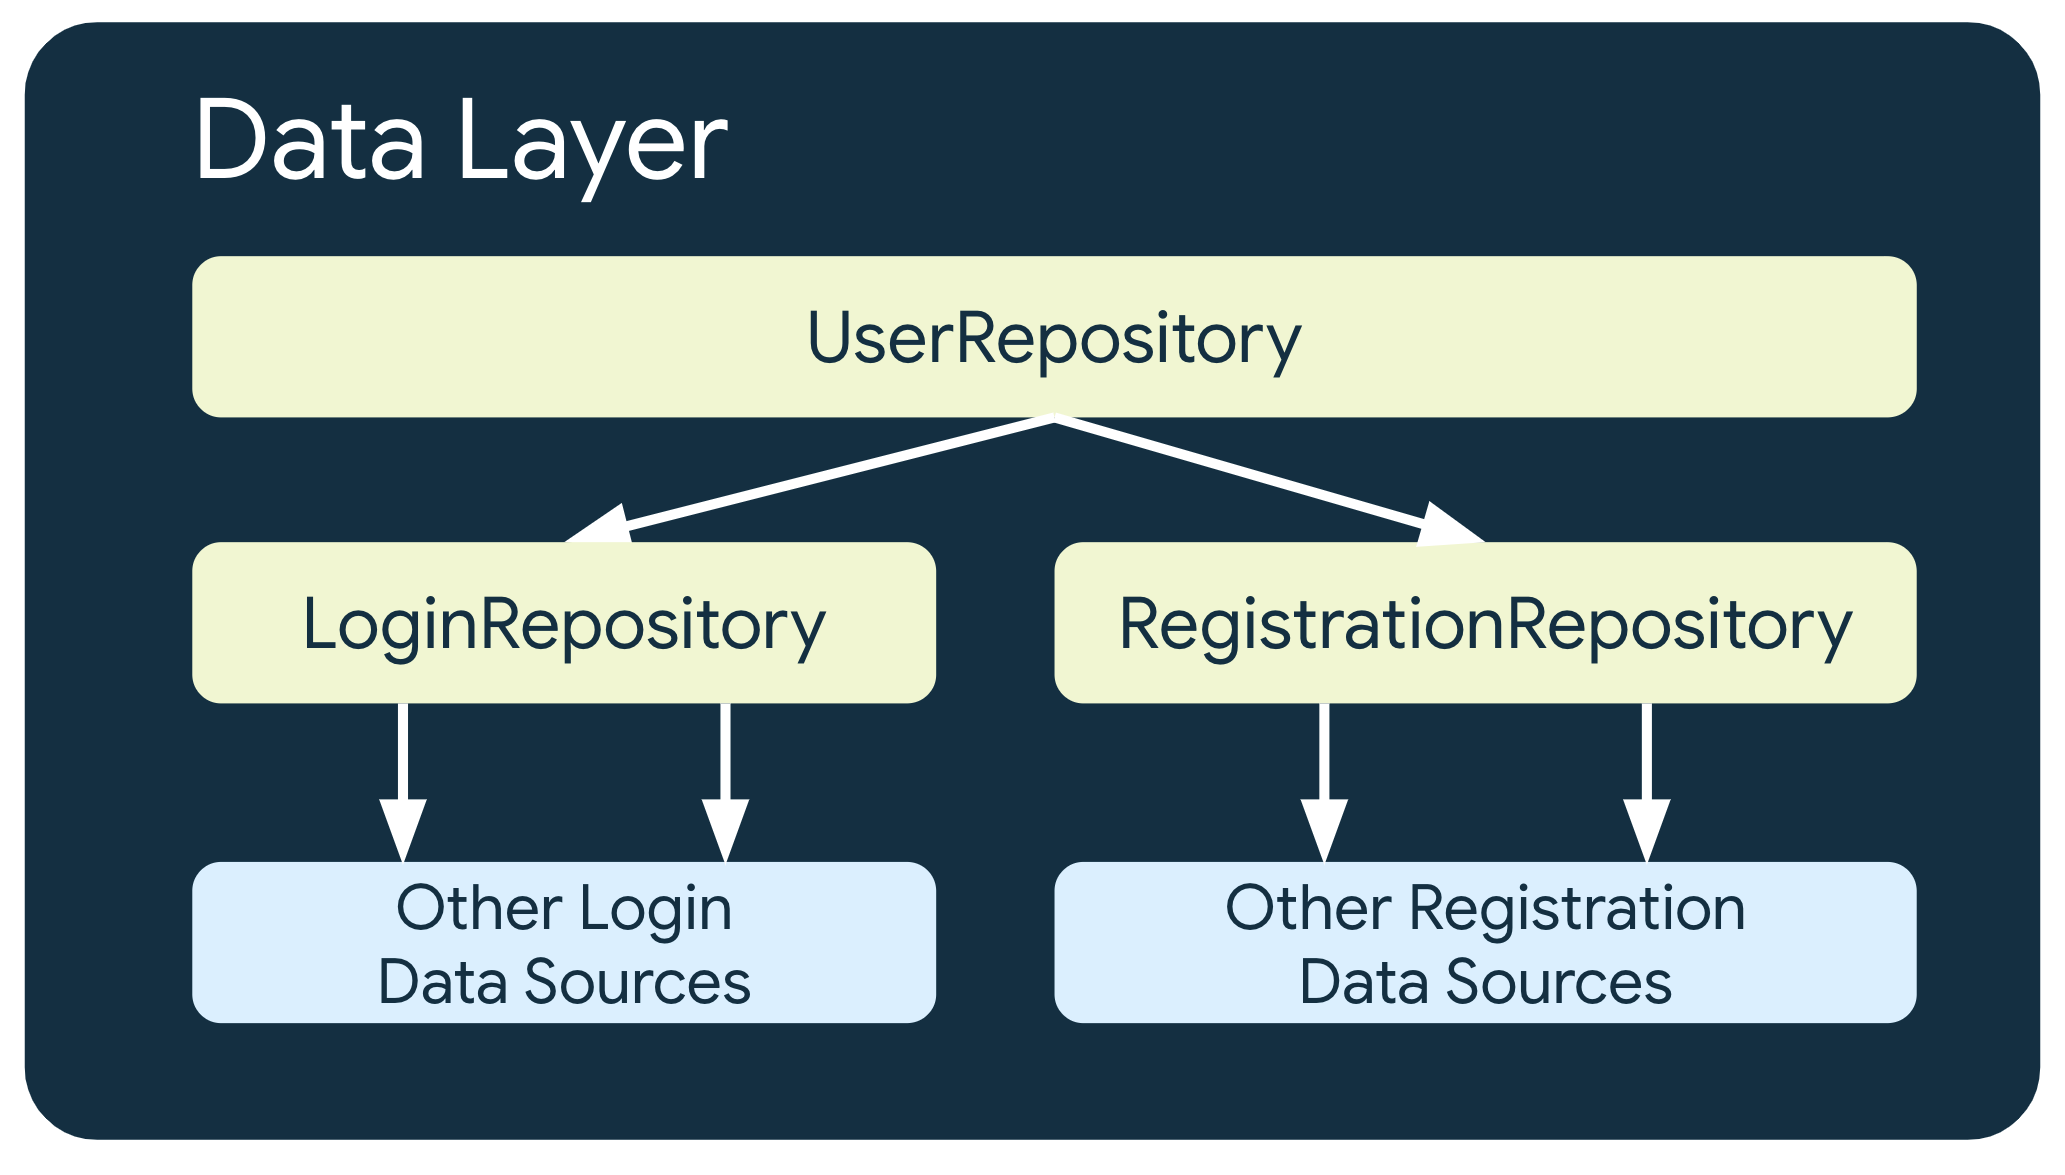 在這個例子中，UserRepository 取決於另外兩個存放區類別：LoginRepository，這取決於其他登入資料來源；以及 Registration Repositories，取決於其他註冊資料來源。